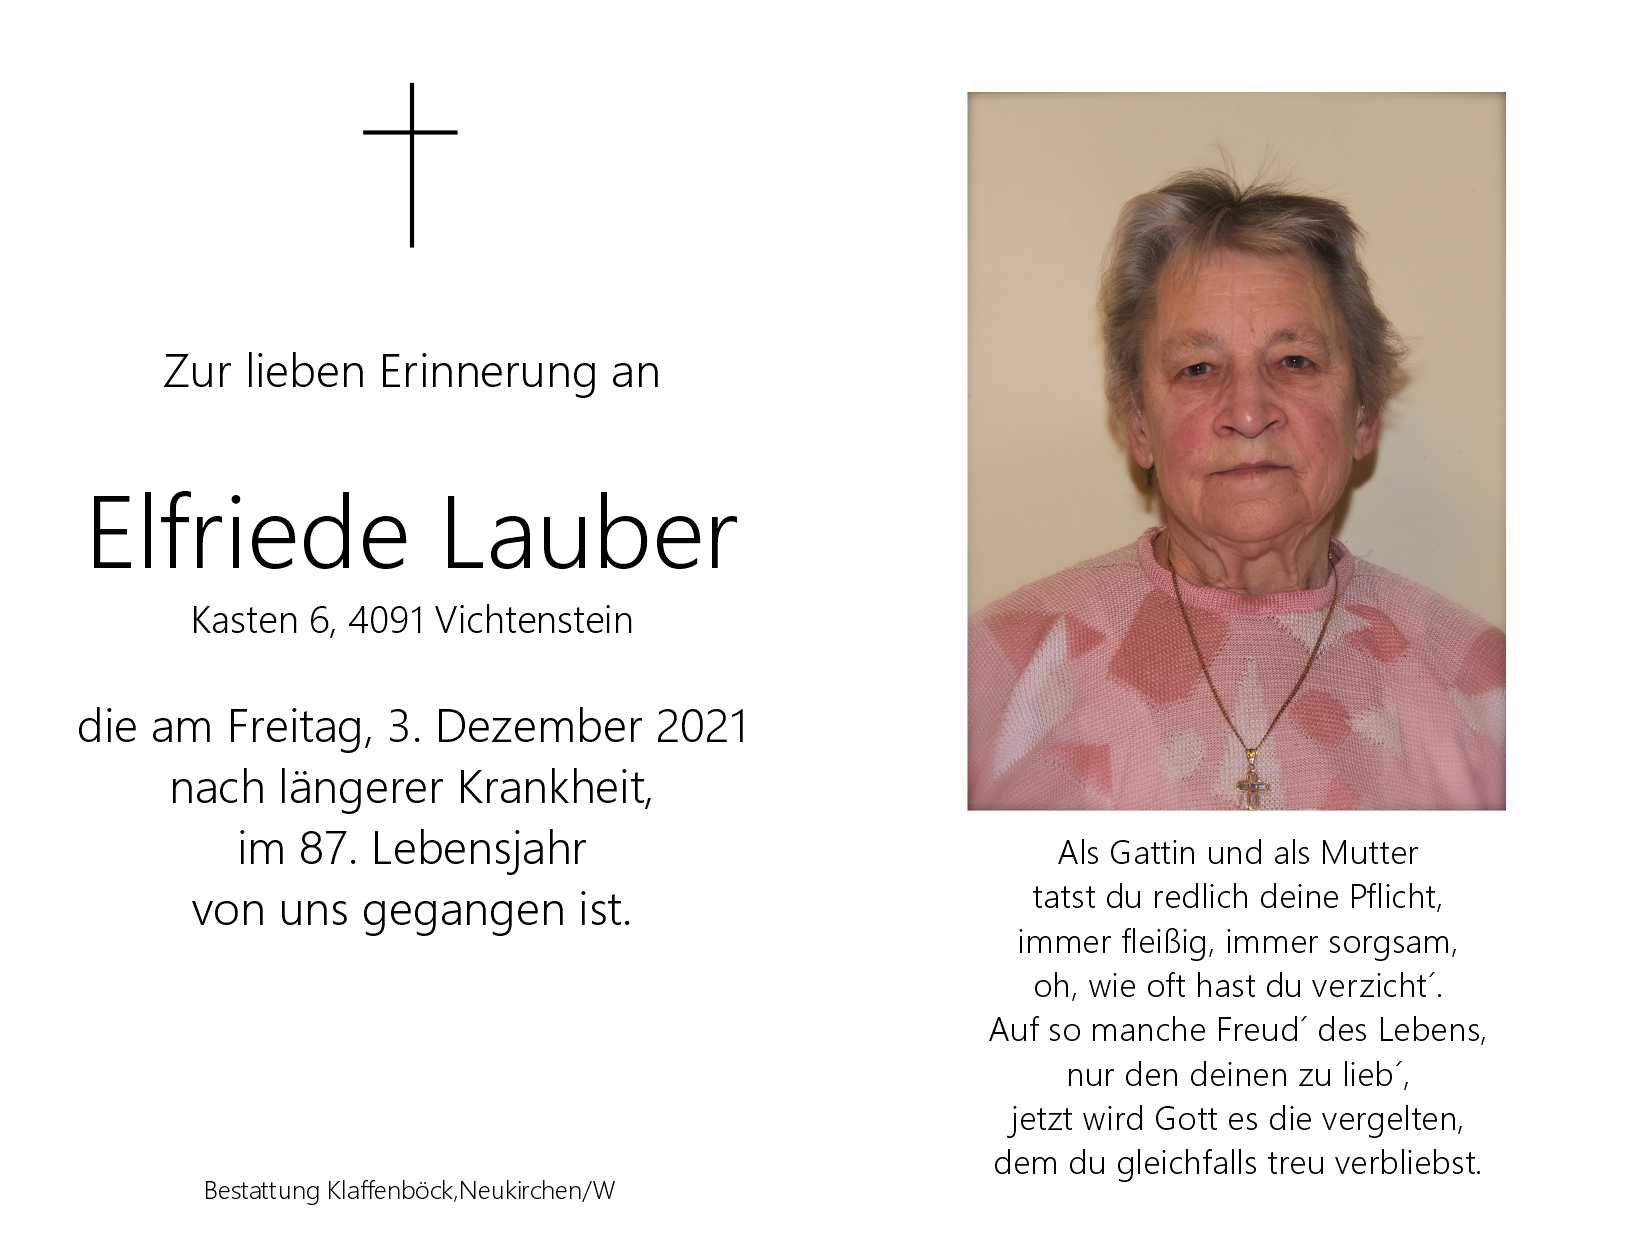 Elfriede  Lauber